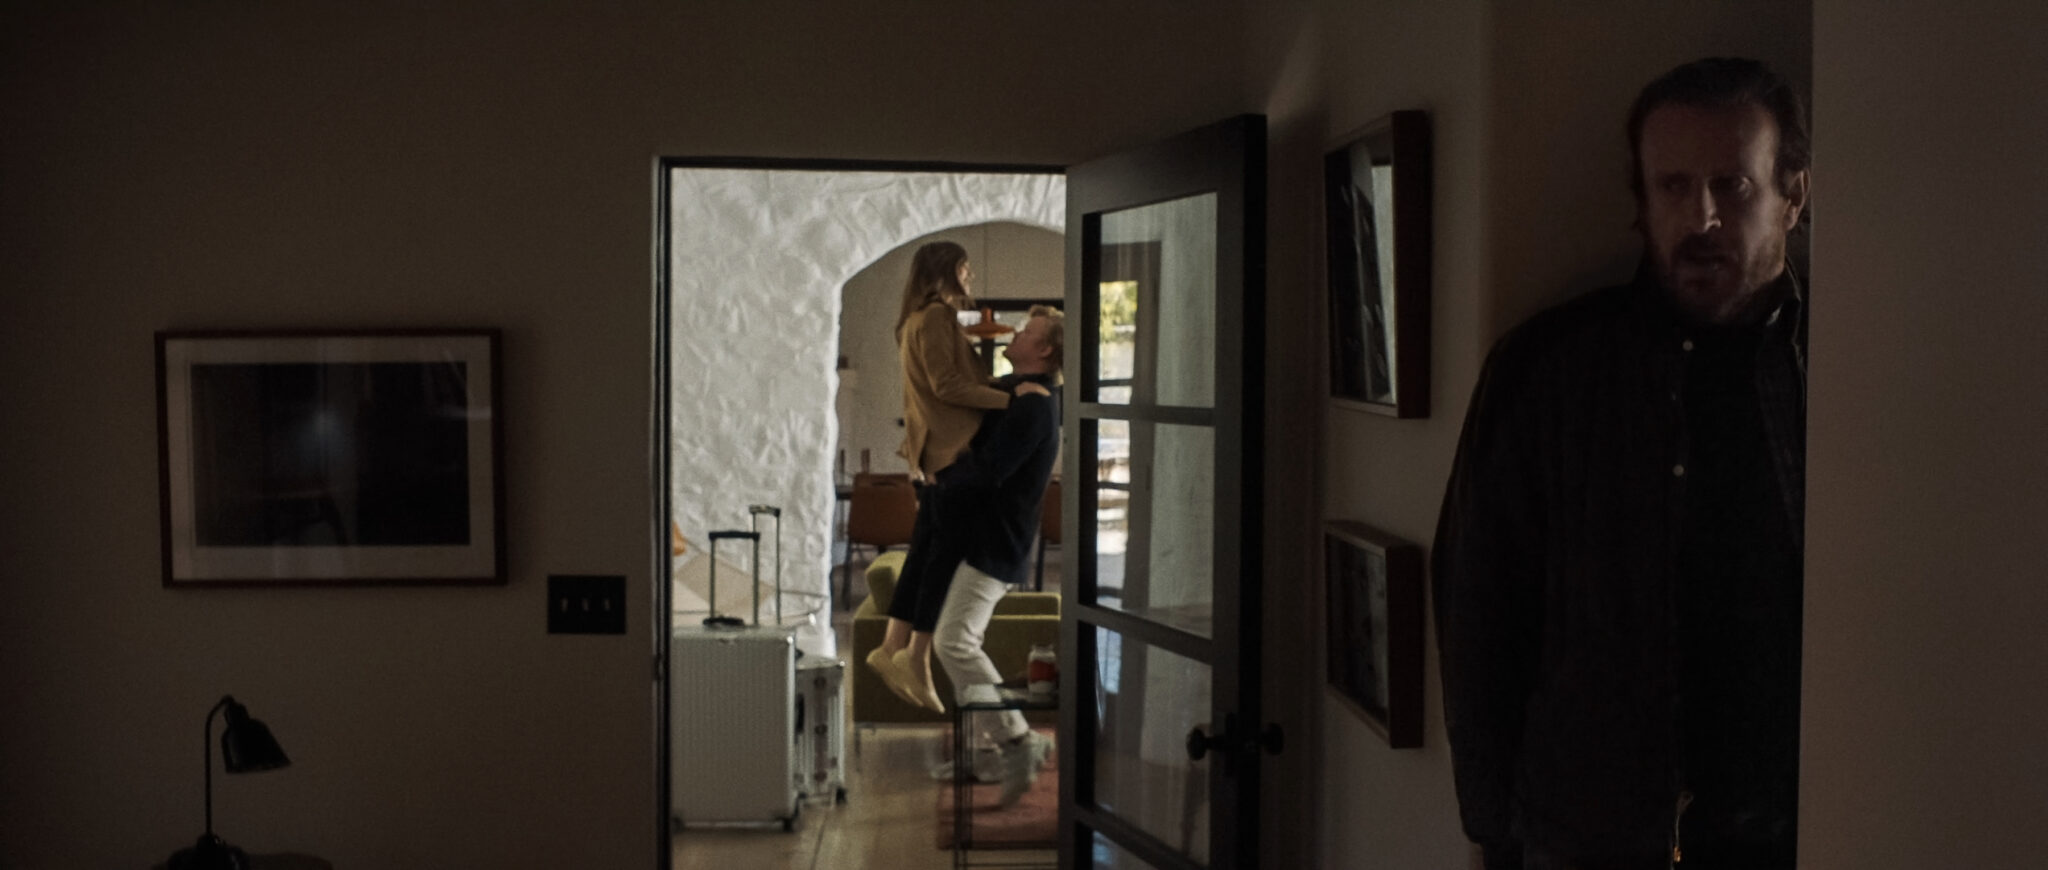 Im Vordergrund versteckt sich Jason Segel in einer Nische während hinten im Bild ein Pärchen im Eingangsbereich des Hauses steht. Die beiden haben Koffer neben sich stehen und der Mann (Jesse Plemons) hebt die Frau (Lily Collins) in die Höhe. Windfall